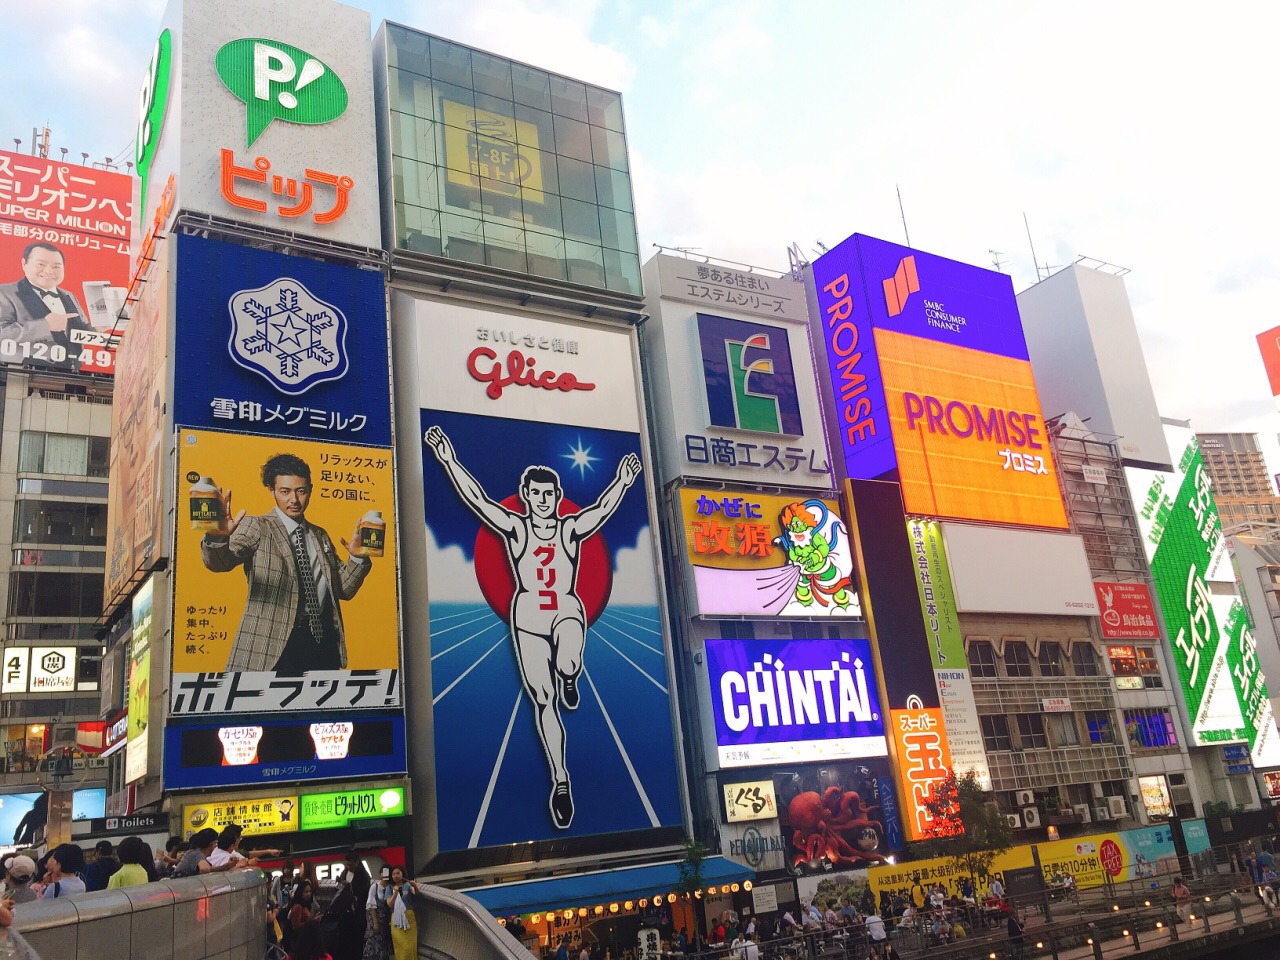 【携程攻略】大阪心斋桥景点,心斋桥 是大阪最大的购物商圈 集中了各